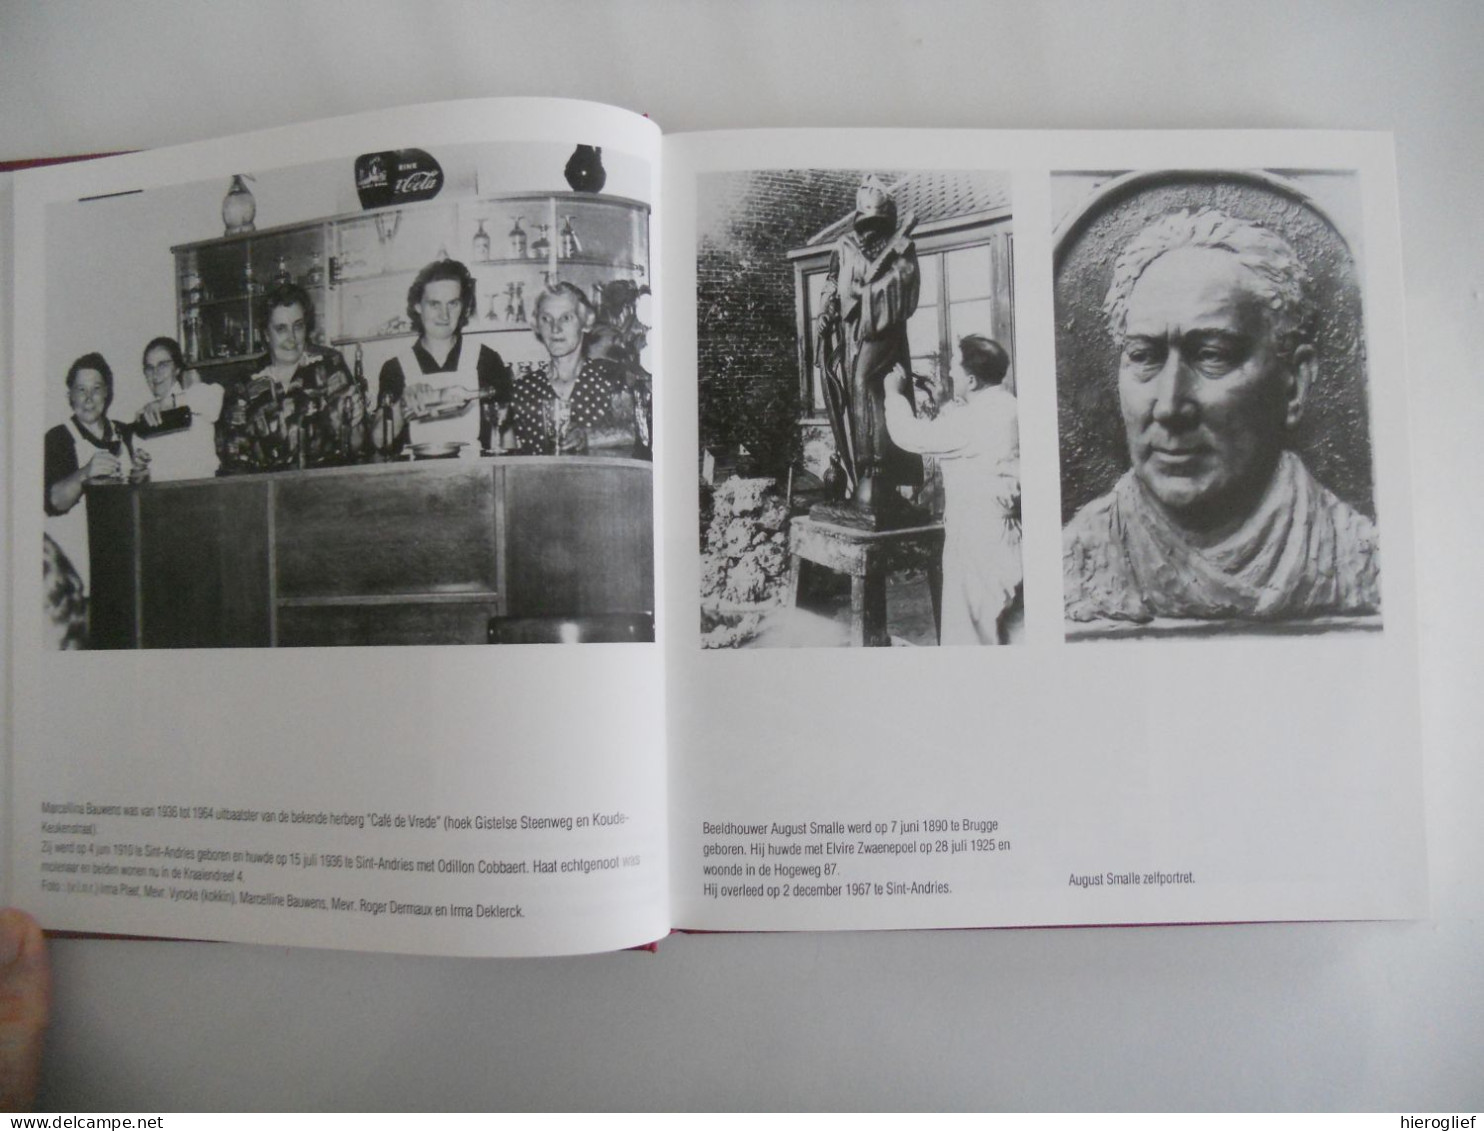 Mensen van bij ons - kijkboek Sint-Andries Brugge - Gerard Bossu oude PK CP AK volksleven heemkunde volkskunde folklore